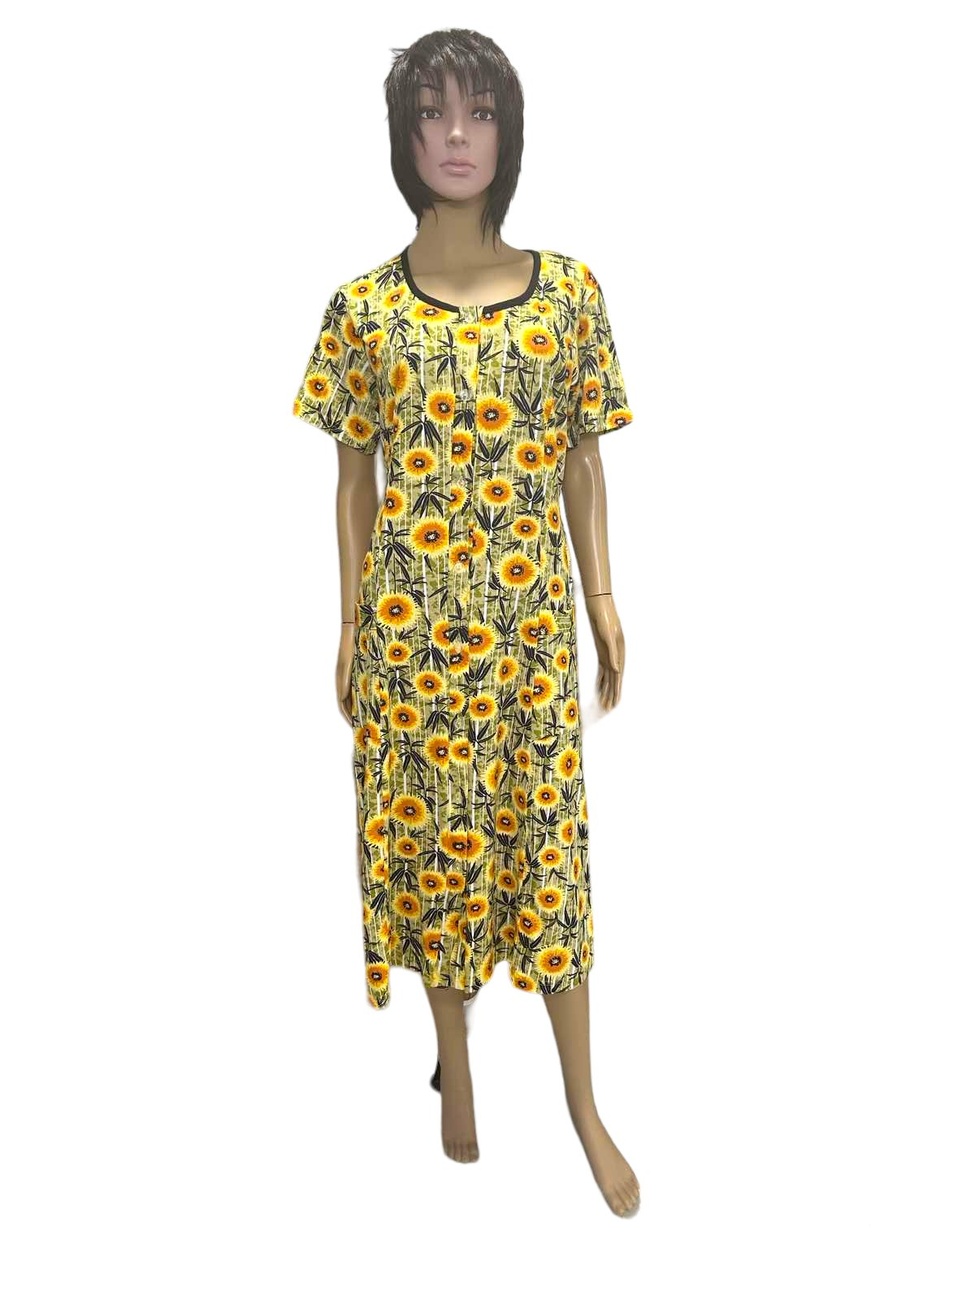 Халат жіночий на ґудзиках реактив кулір оливкового кольору, Оливковий, 48-50